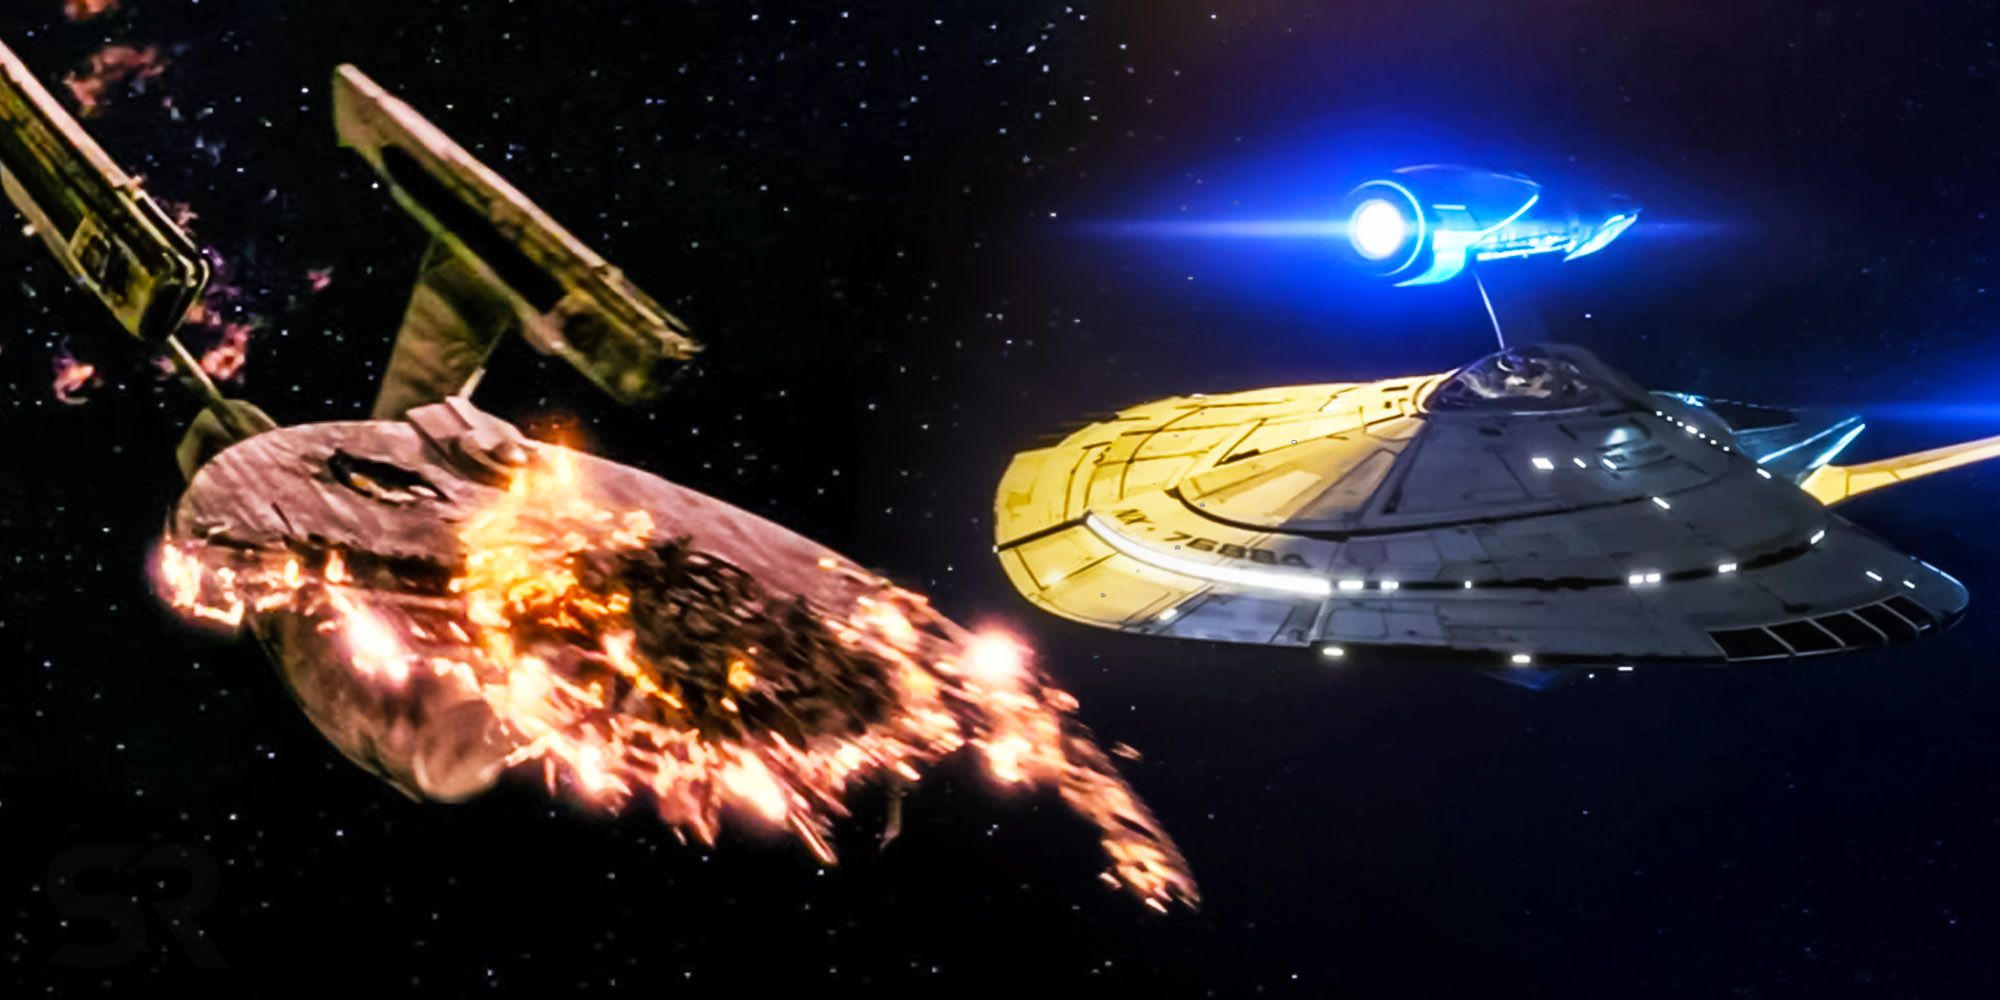 Star trek enterprise destroyed protostar